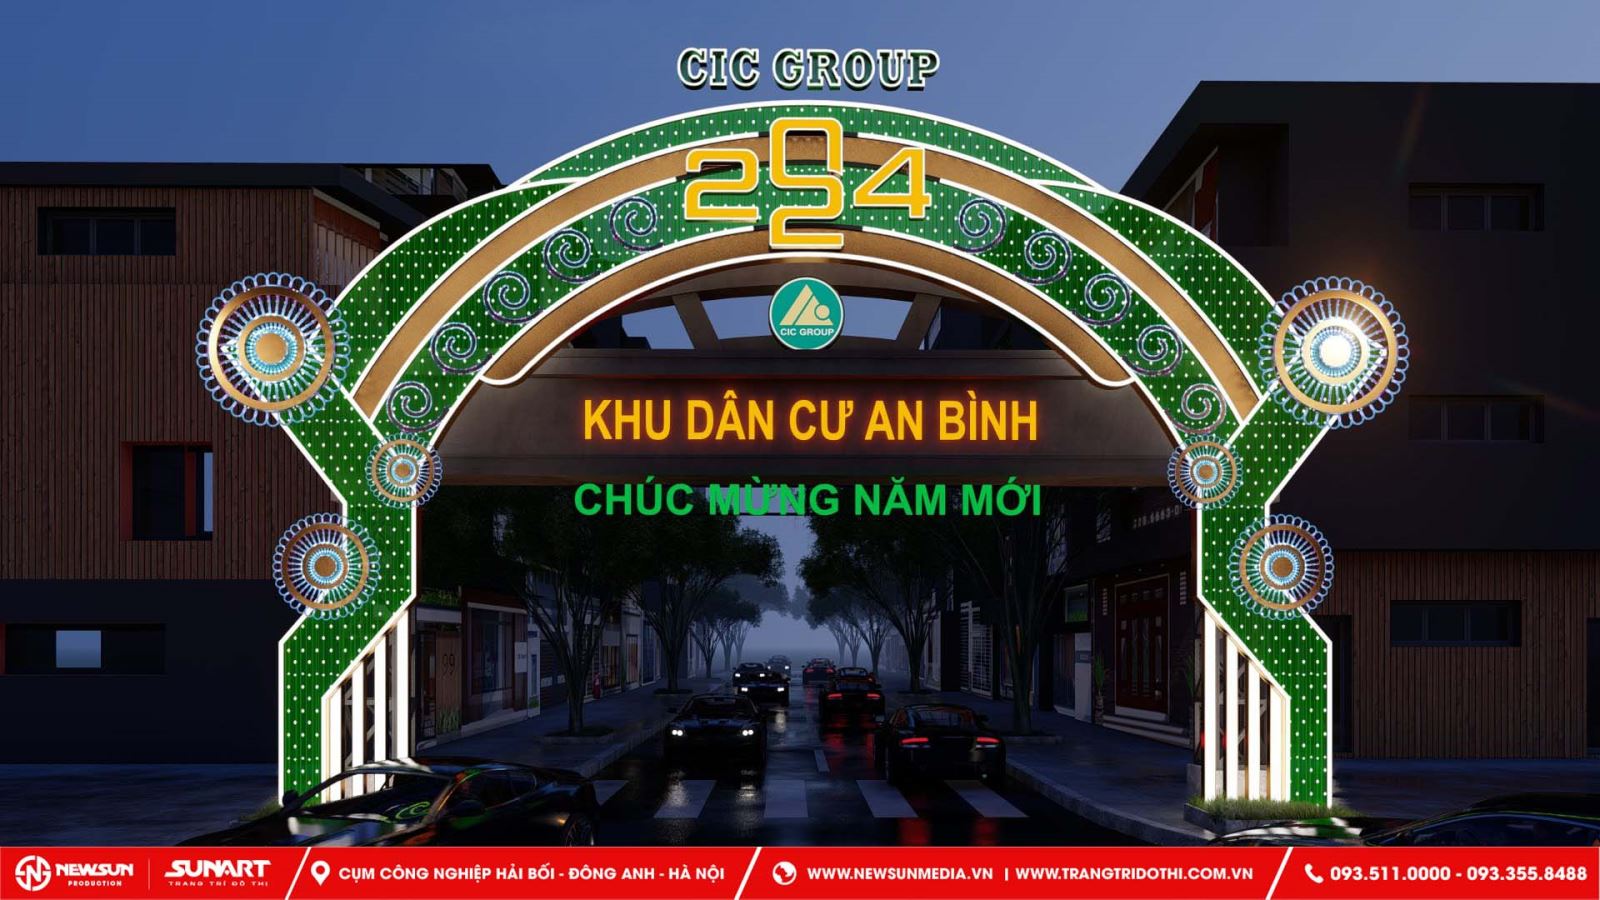 Thiết kế cổng chào trang trí đường phố Sơn La với khẩu hiệu chào đón